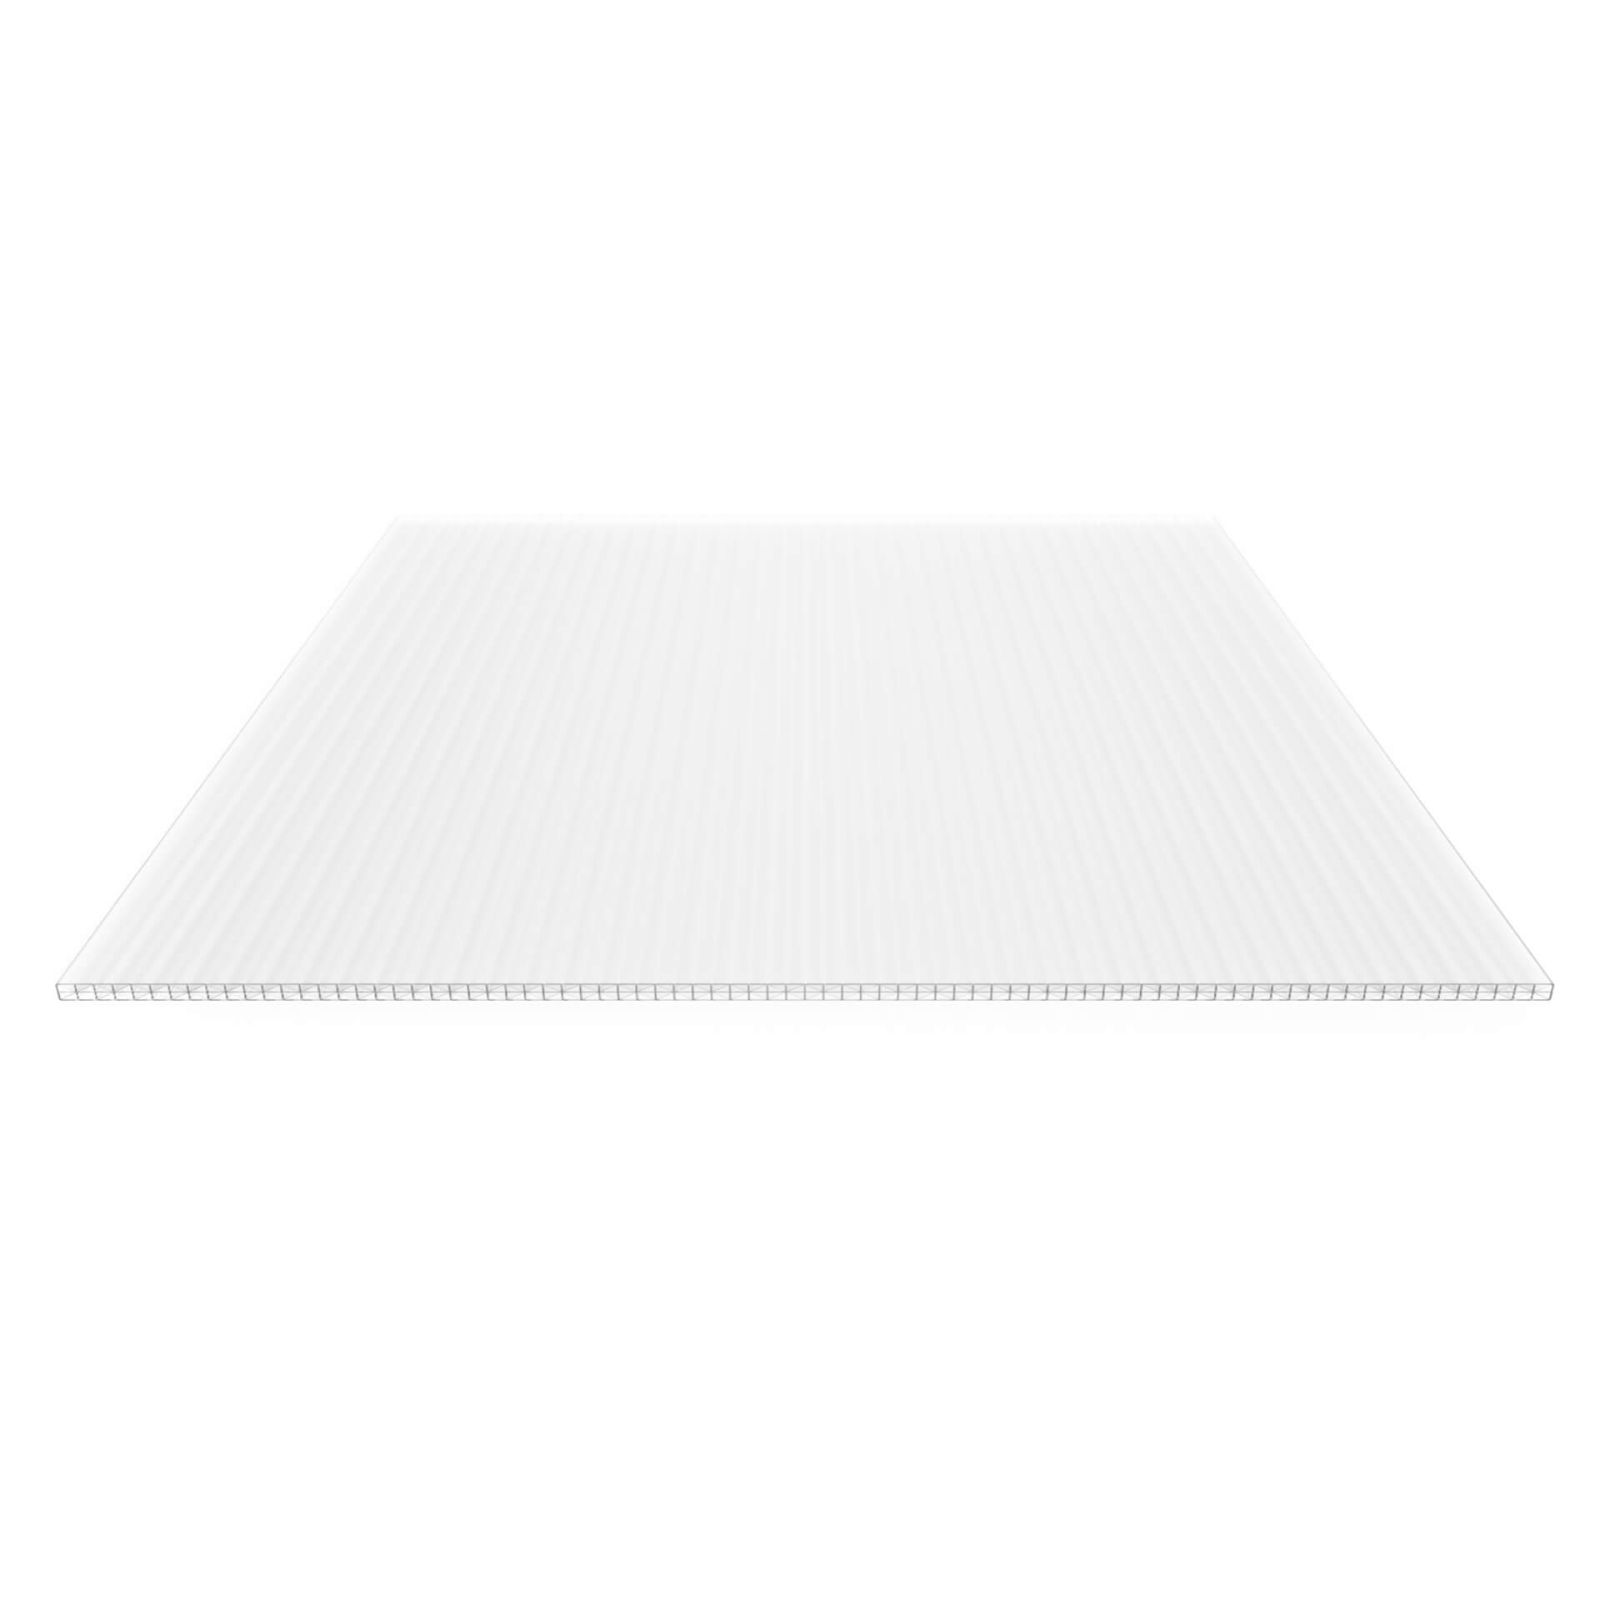 Polycarbonat Stegplatte | 16 mm | Profil Mendiger | Sparpaket | Plattenbreite 1200 mm | Opal Weiß | Extra stark | Breite 3,75 m | Länge 2,00 m #5